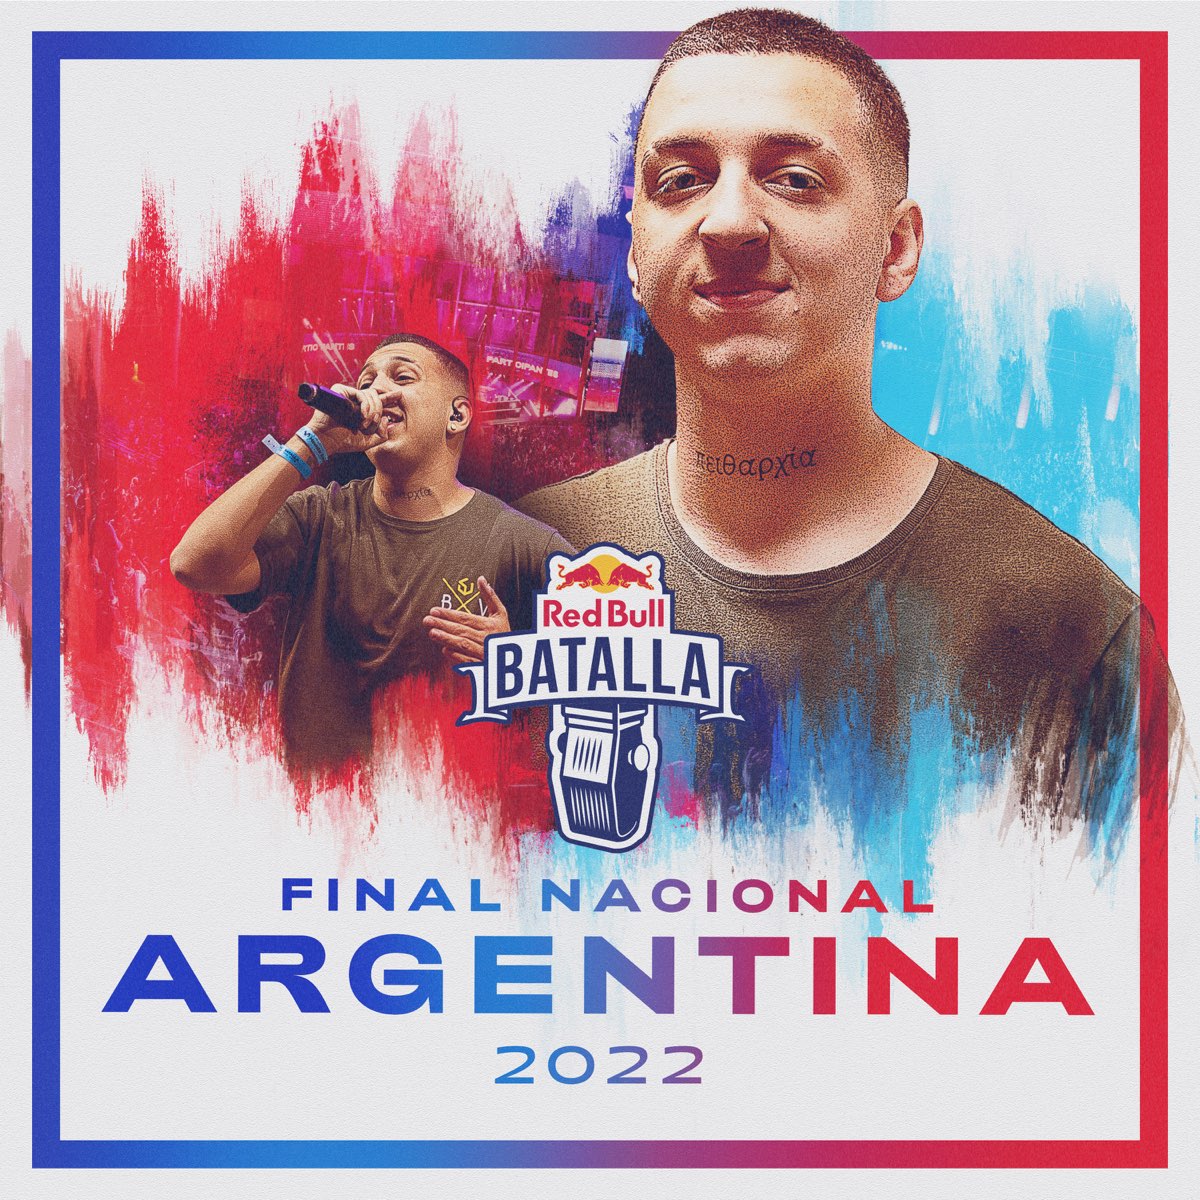 ‎Final Nacional Argentina 2022 (Live) de Red Bull Batalla en Apple Music